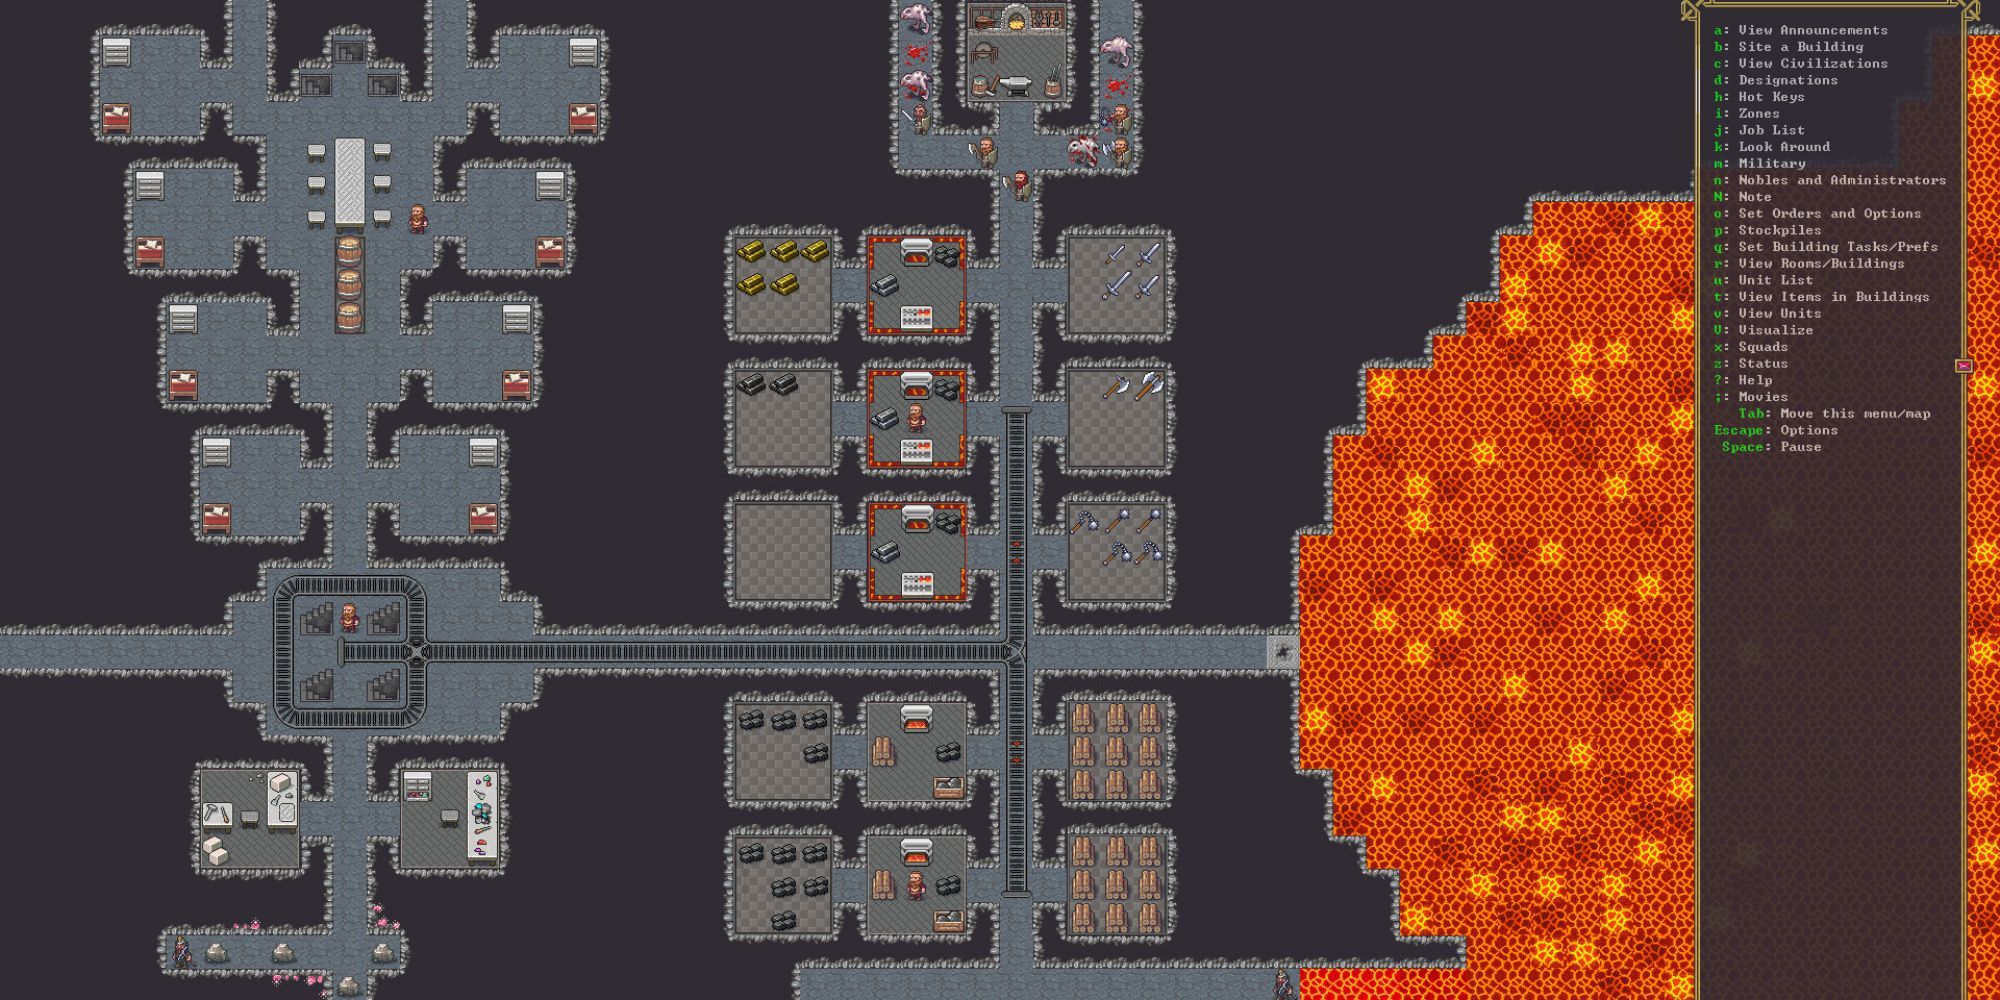 Dwarf Fortress chambers, passages ways, and lava lake